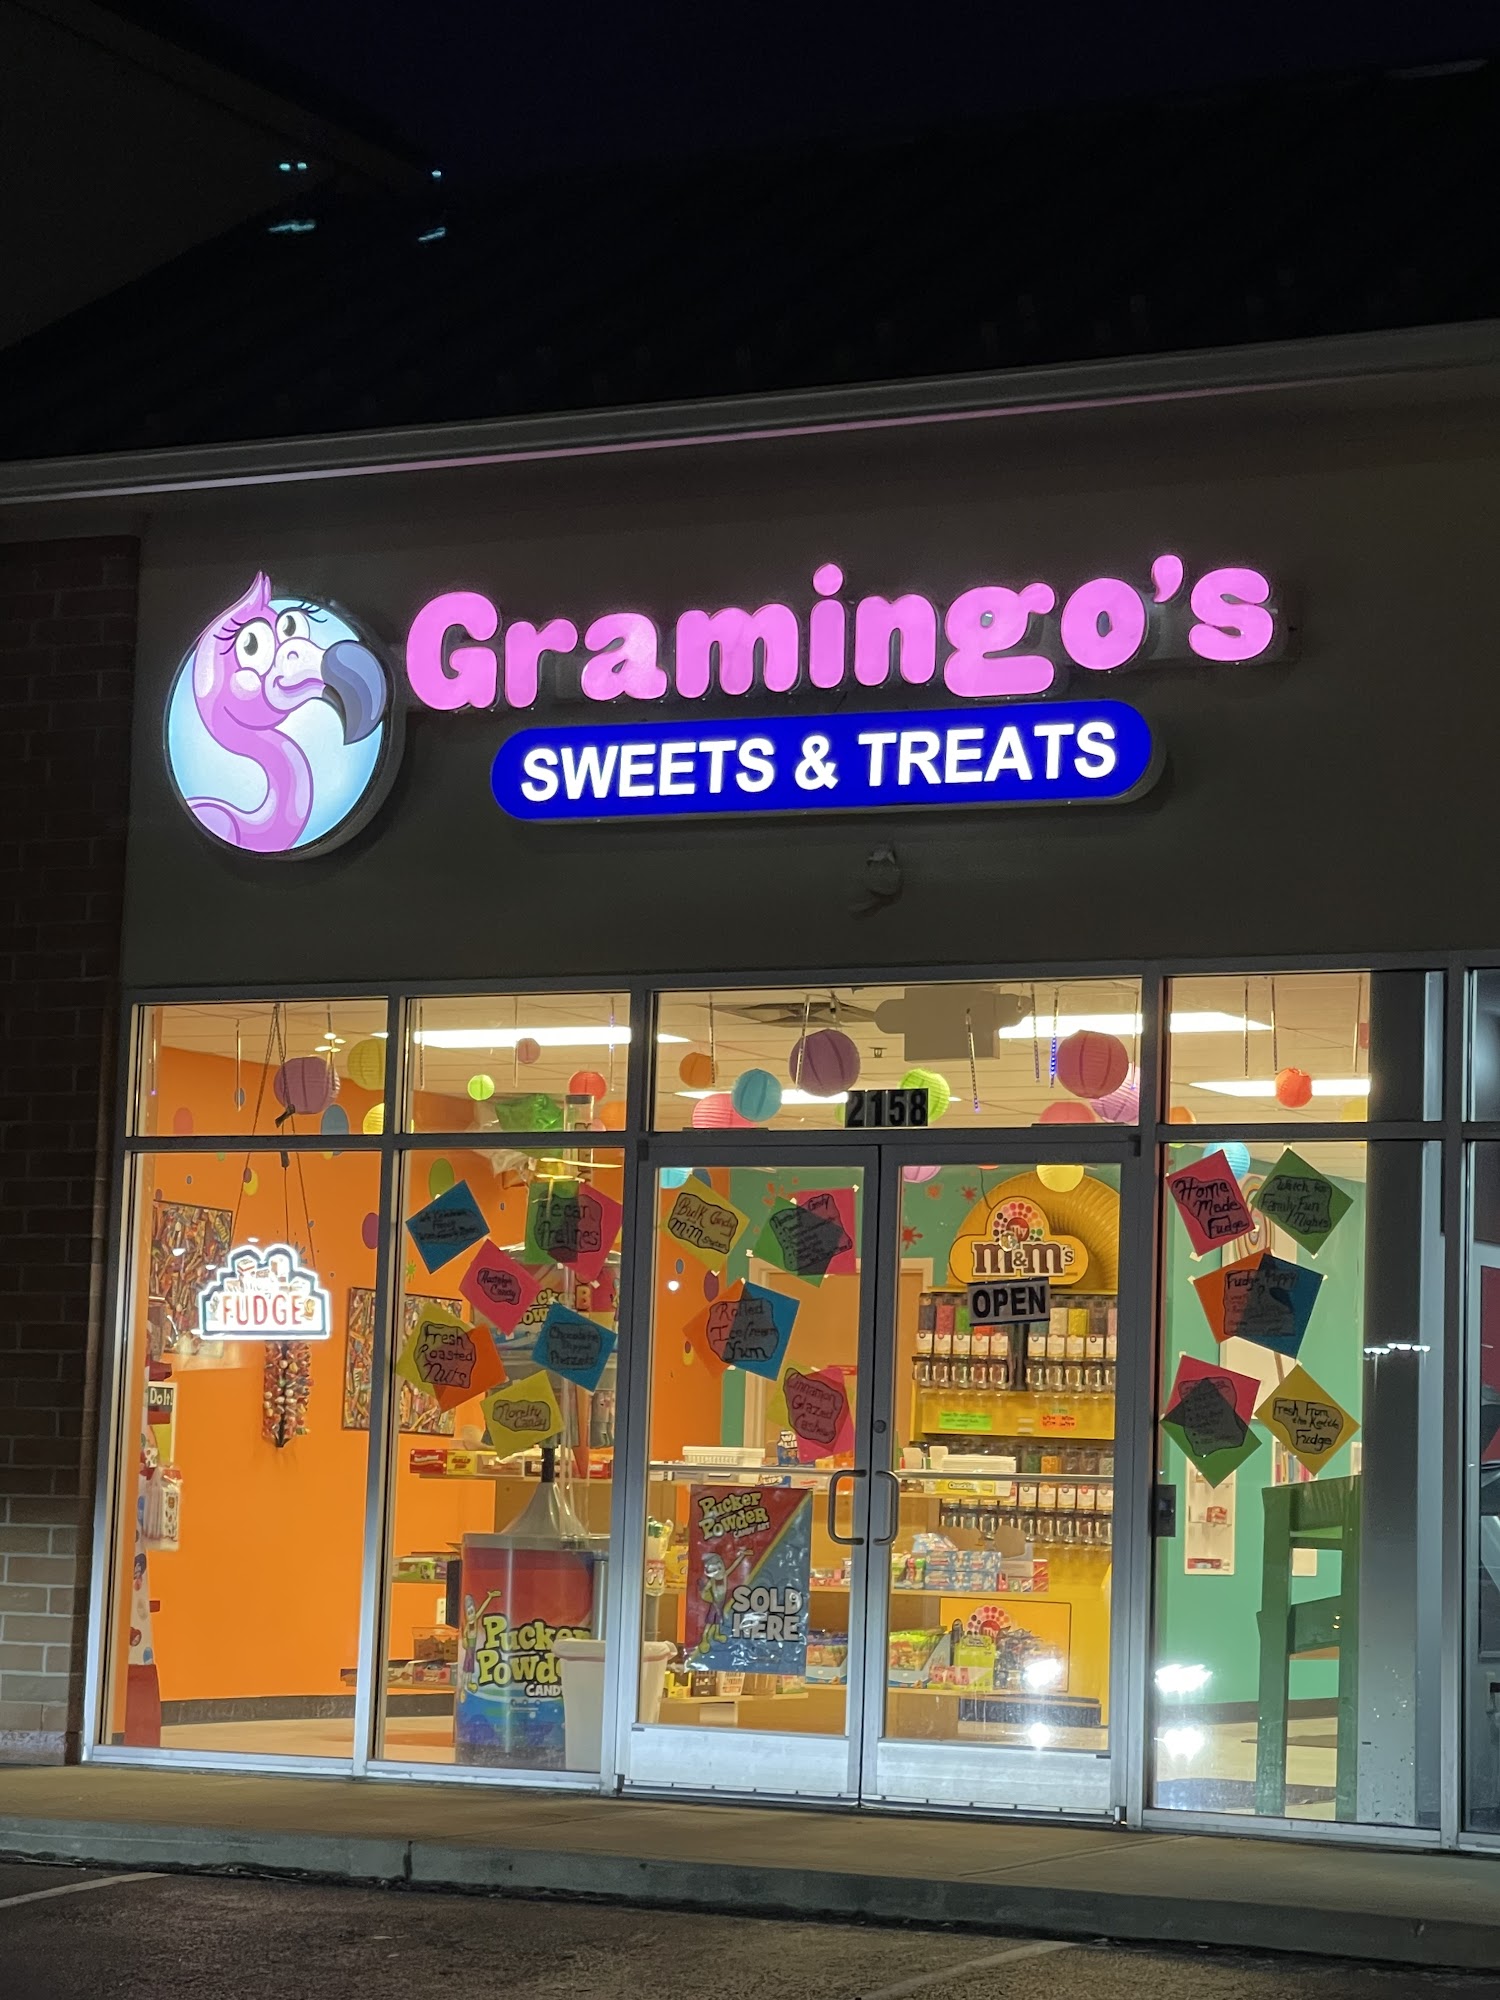 Gramingo's Sweets & Treats